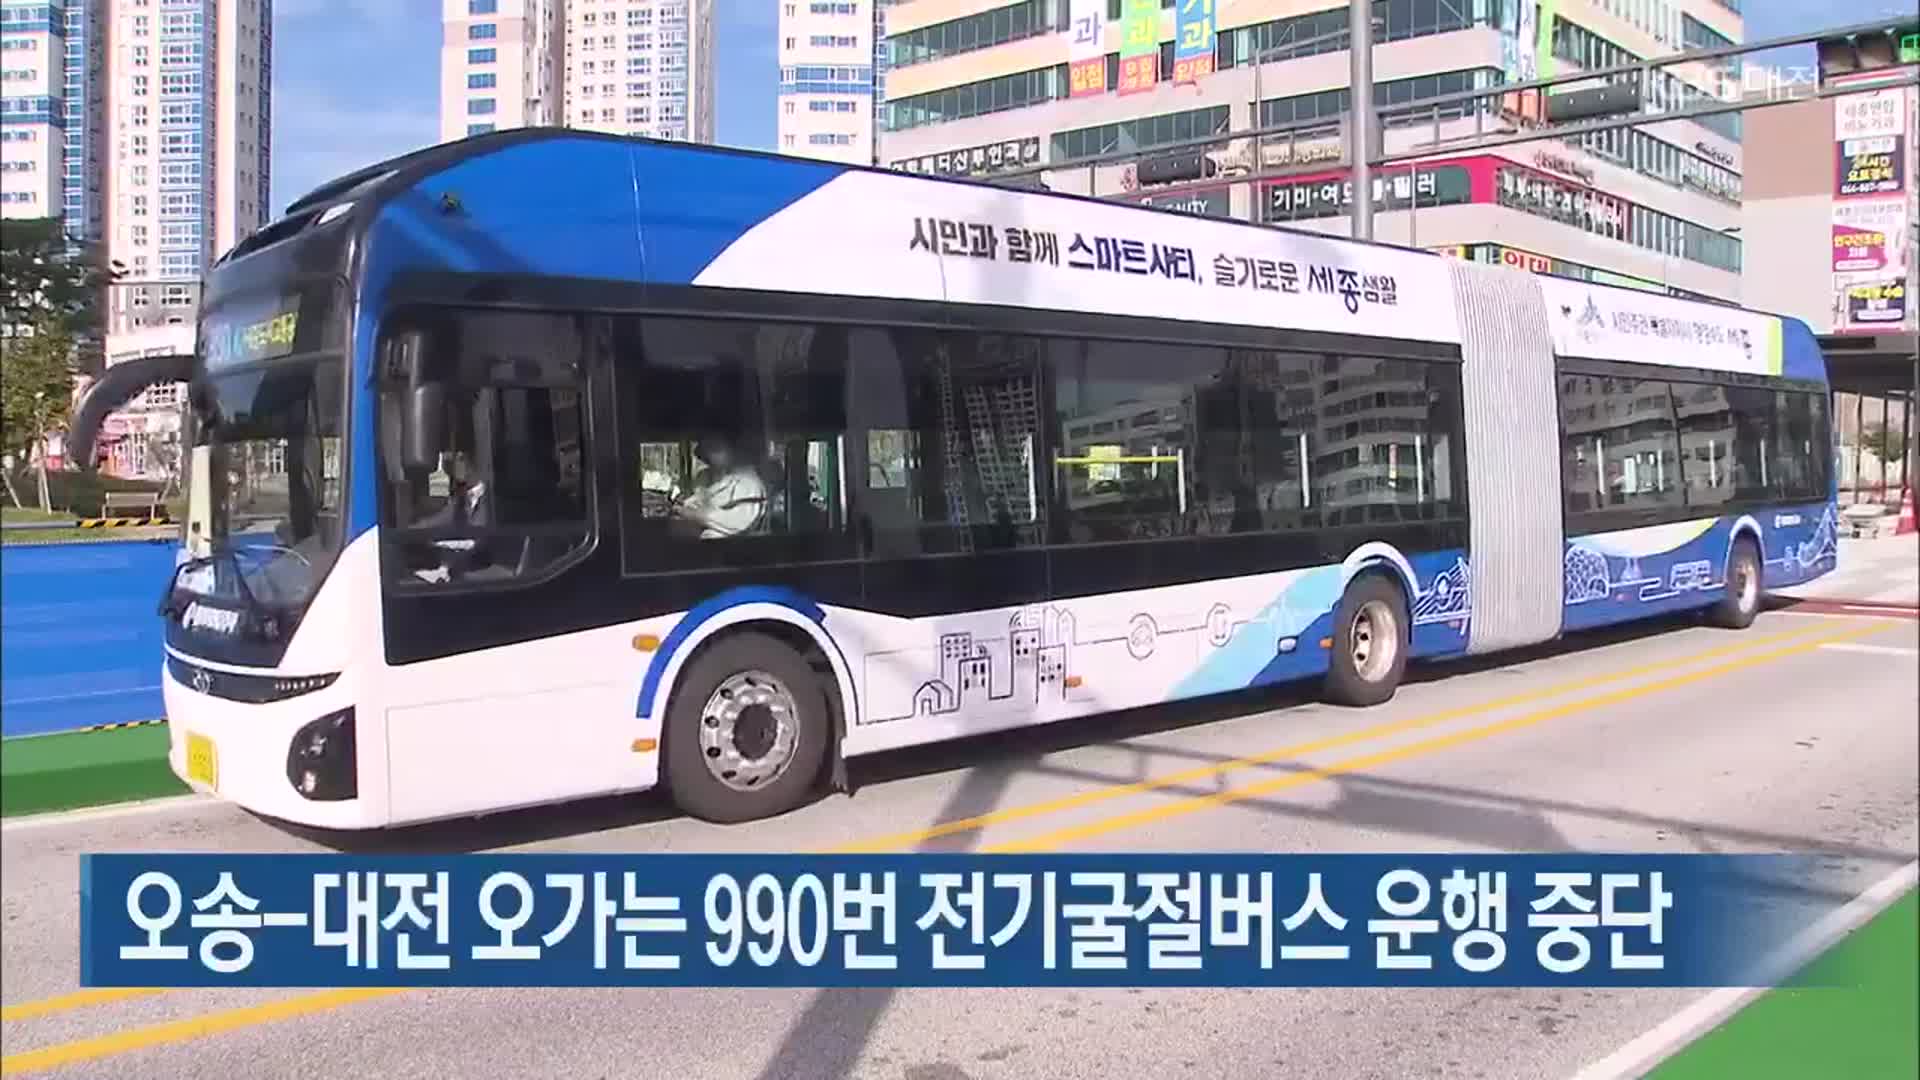 오송-대전 오가는 990번 전기굴절버스 운행 중단